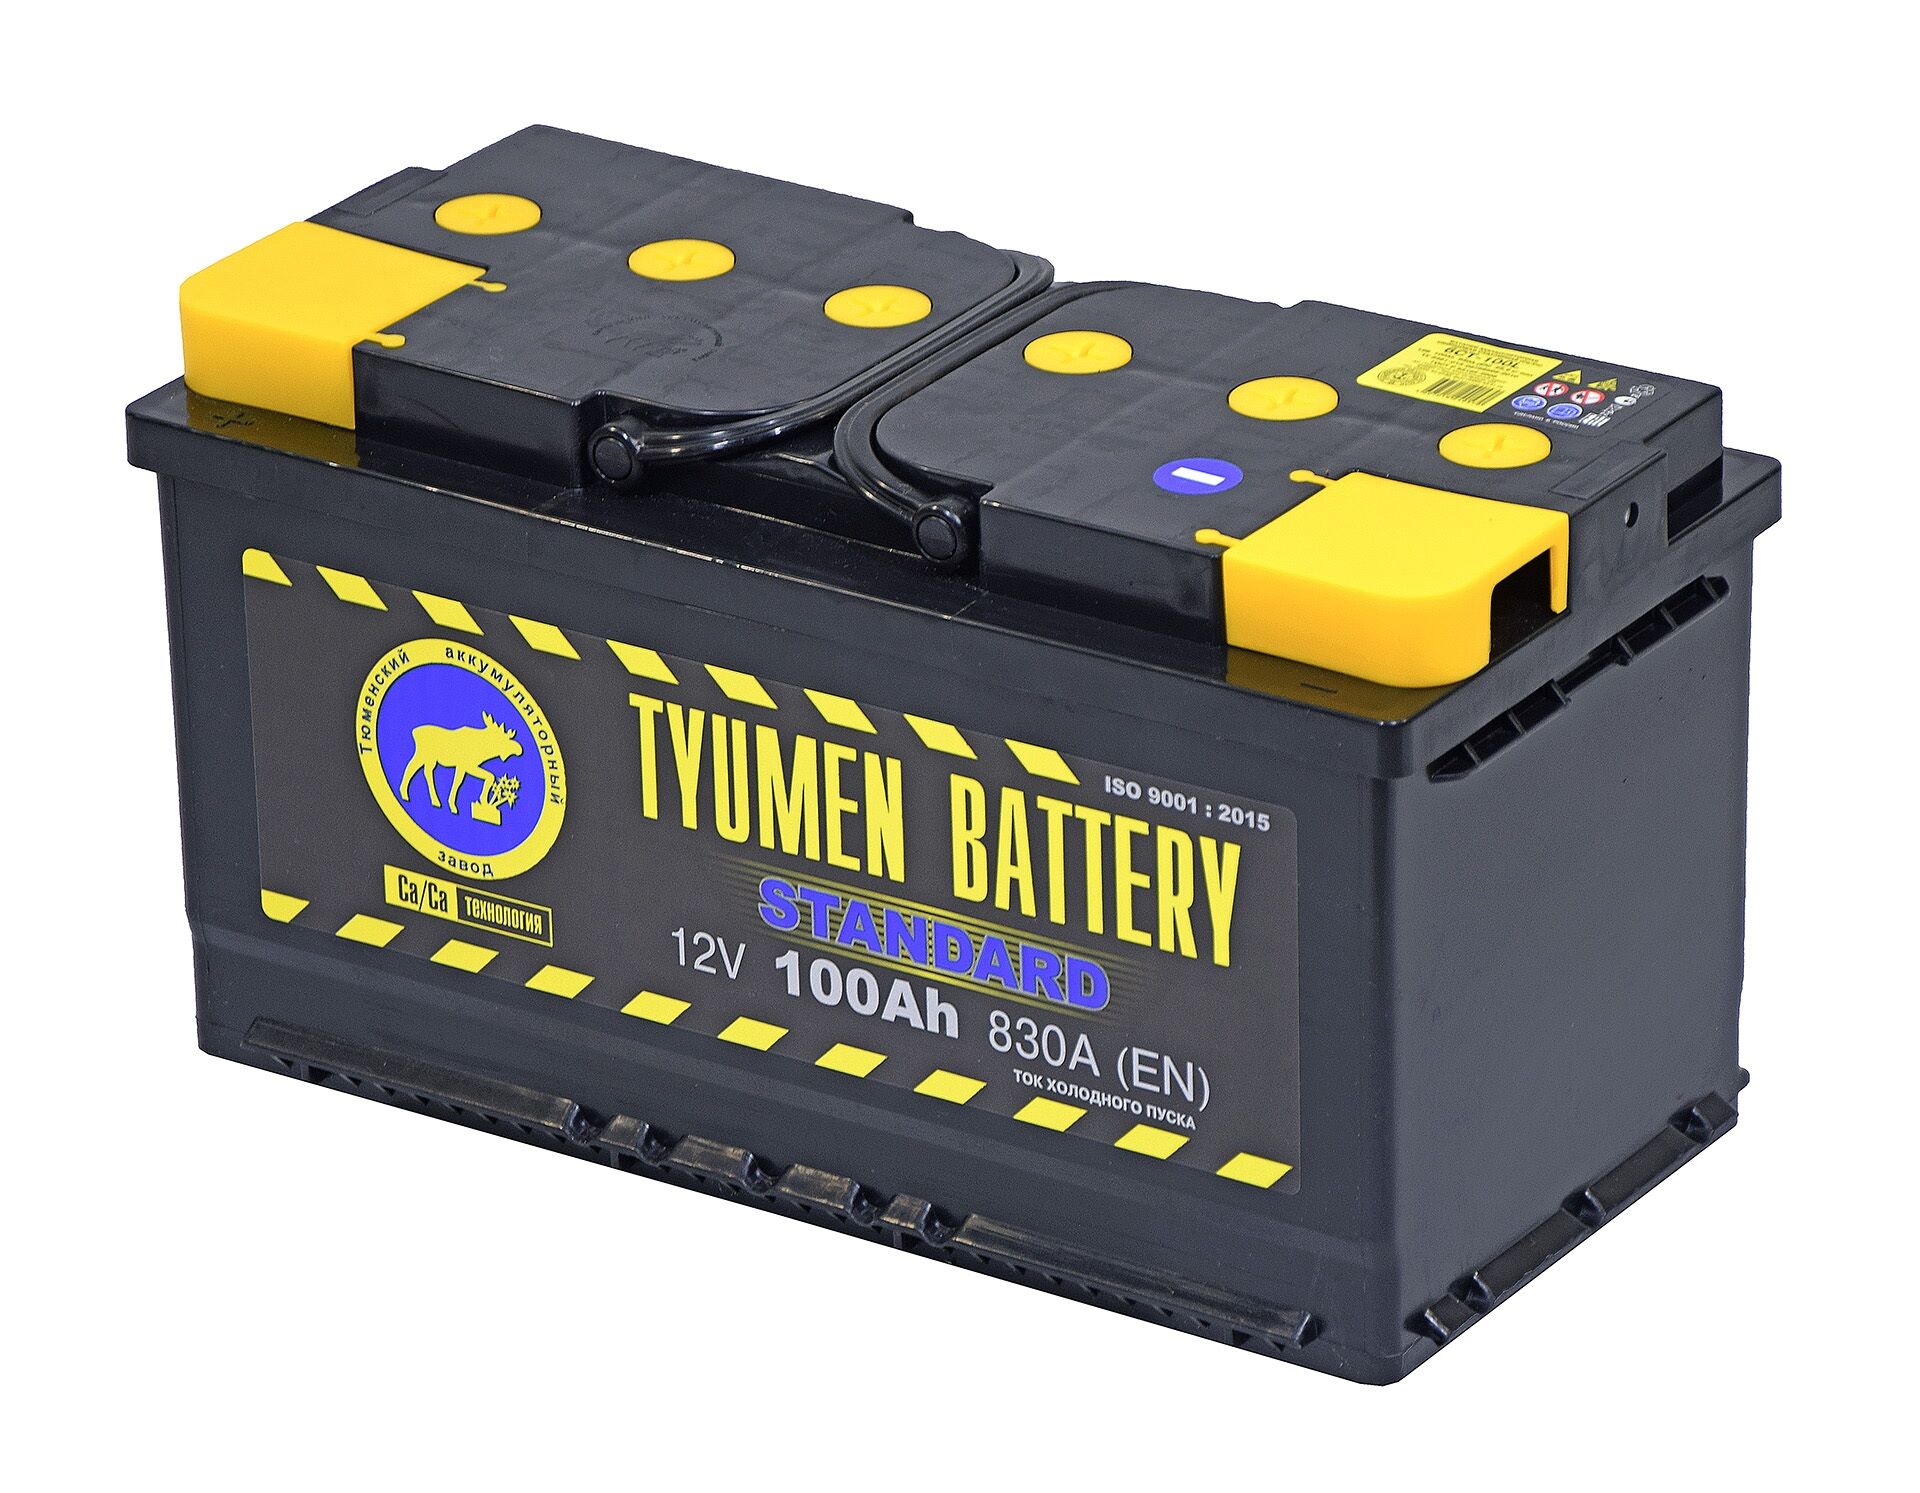 Тюмень АКБ 100ач. Tyumen Battery Standard 190 Ач. Tyumen Battery Standard 100а/ч. Аккумулятор Tyumen Battery Standart 190а/ч.